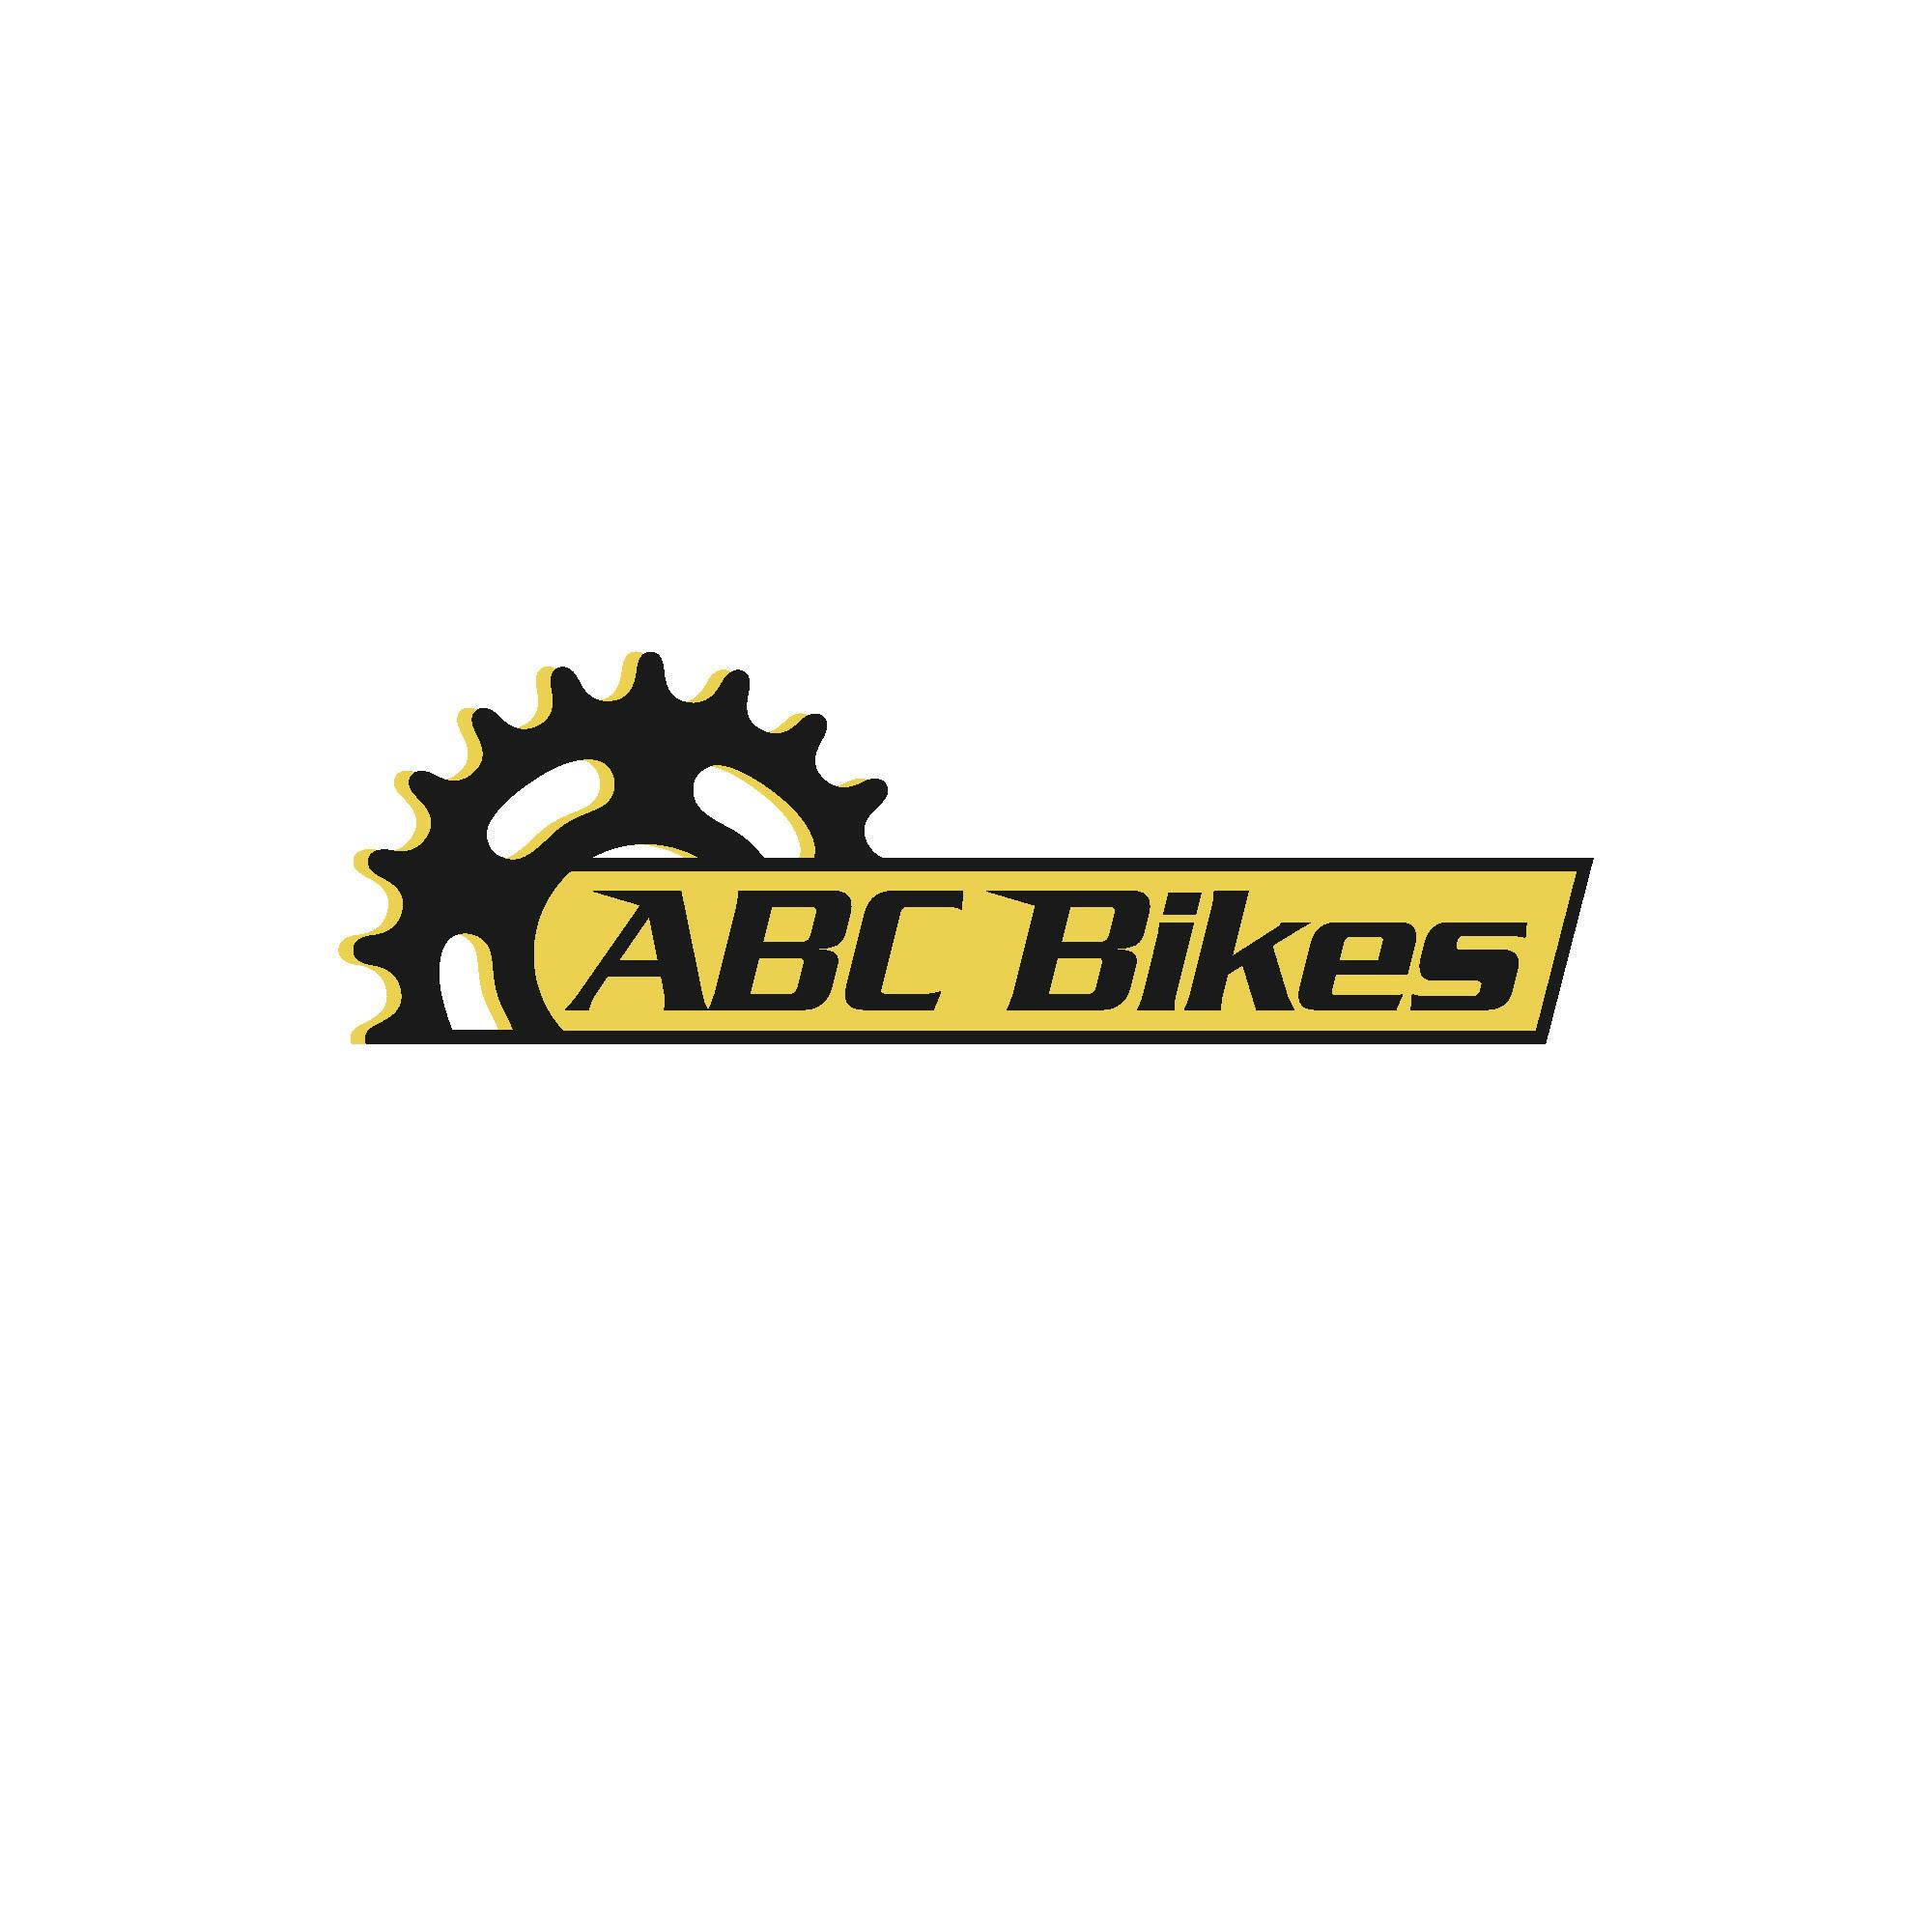 ABC Bikes